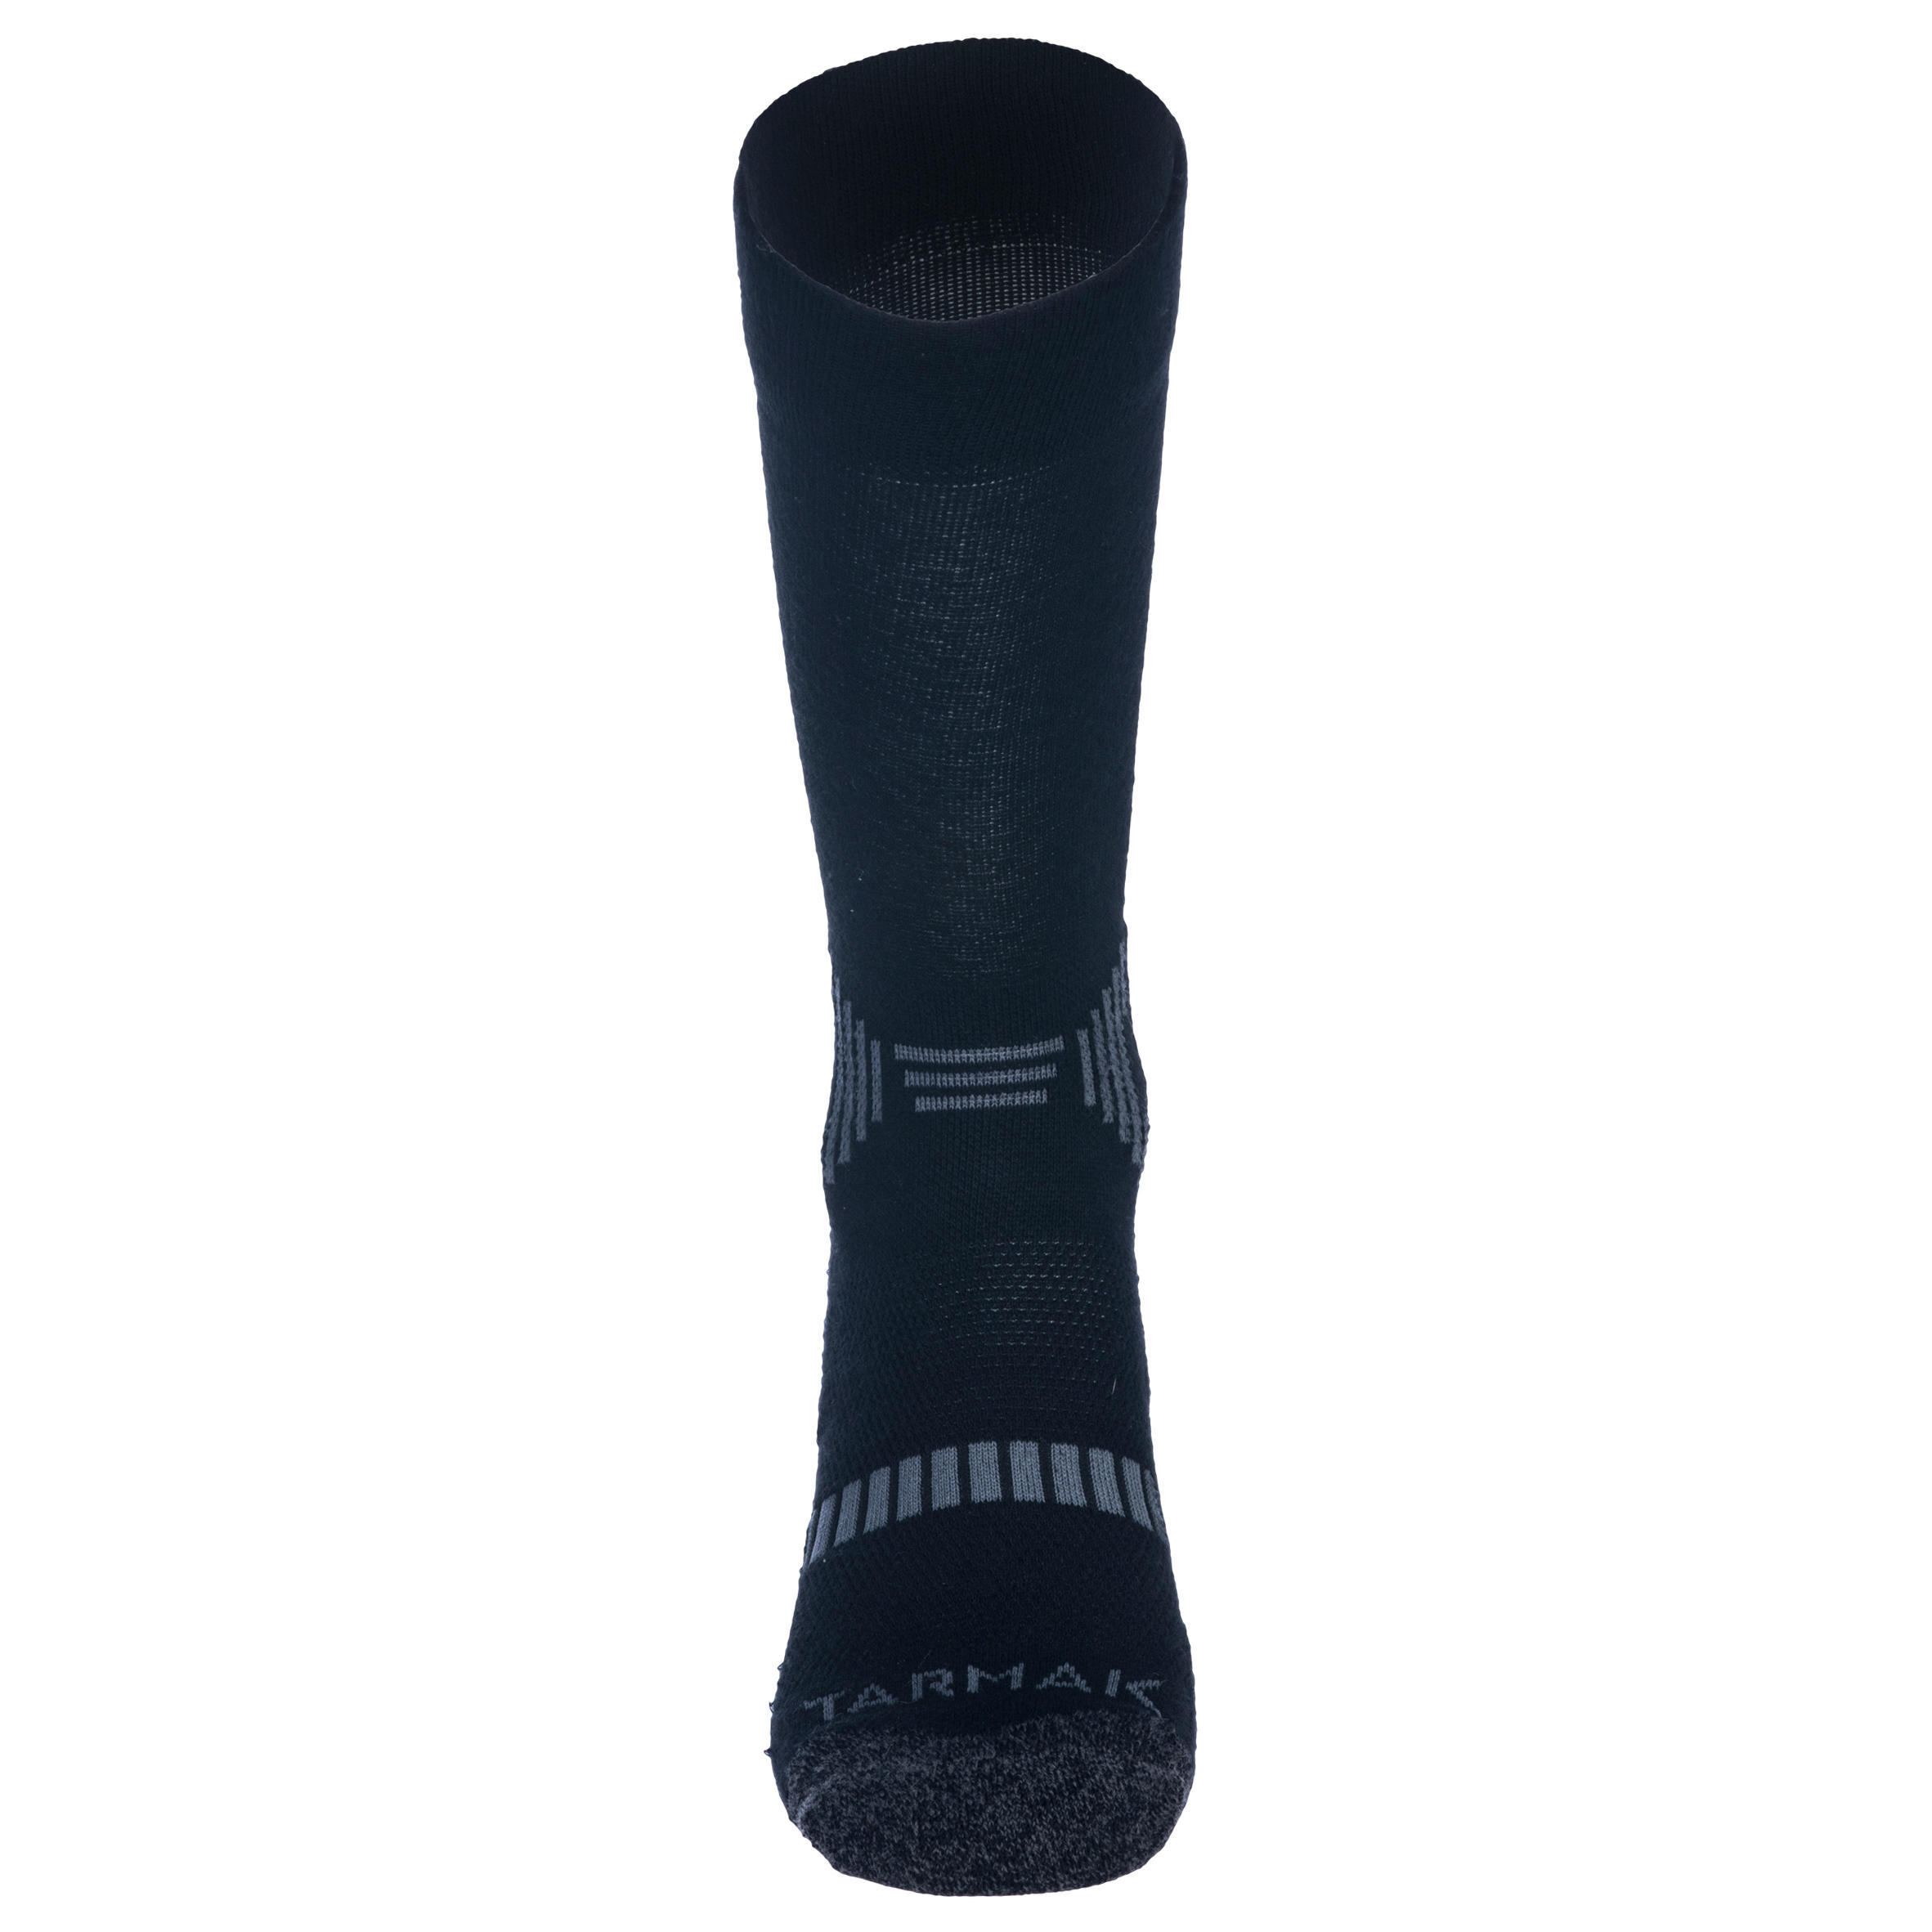 Men's/Women's Mid-Rise Basketball Socks SO500 Twin-Pack - Black 3/8